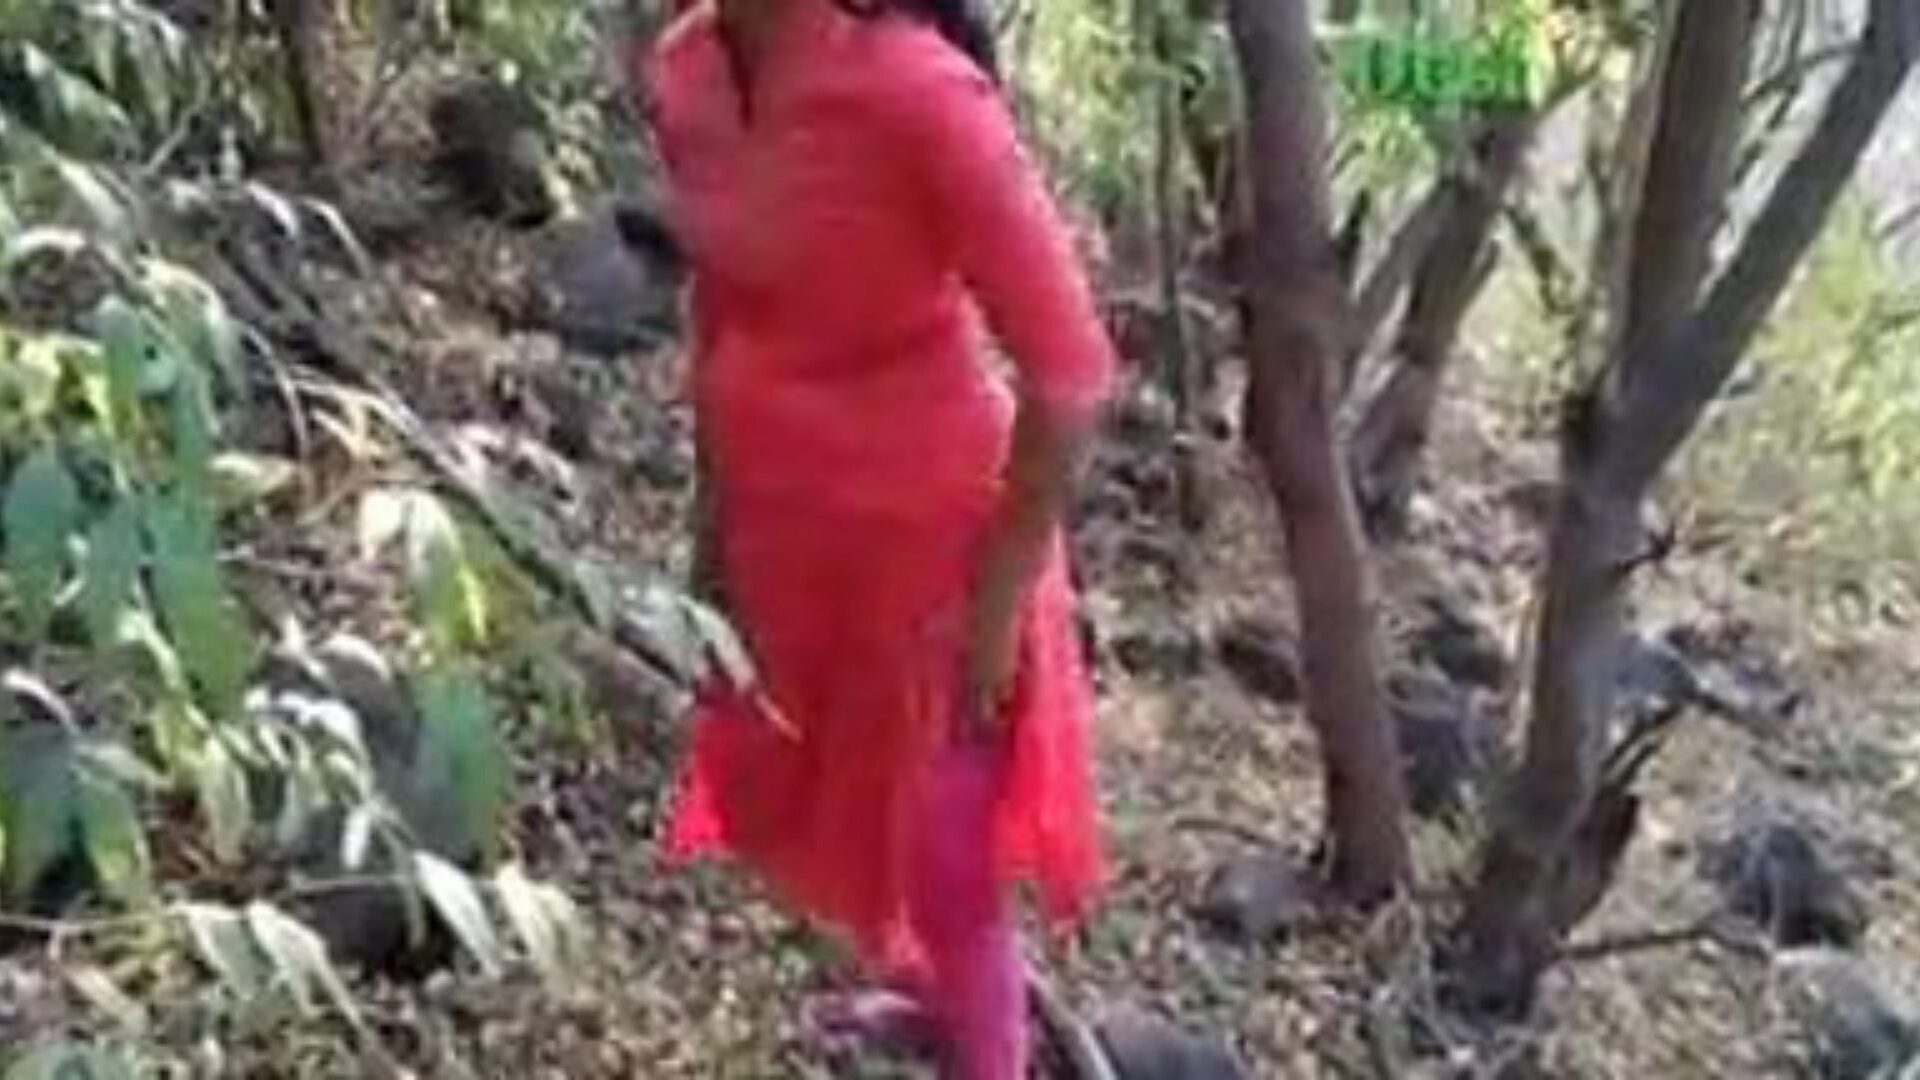 desi petite amie baise dans la jungle, vidéo porno indienne gratuite f0 regardez le clip de la petite amie desi baise dans la jungle sur xhamster, la plus grande page Web de tube de baise avec des tonnes de scènes de films porno hardcore et éjacule indiennes gratuites